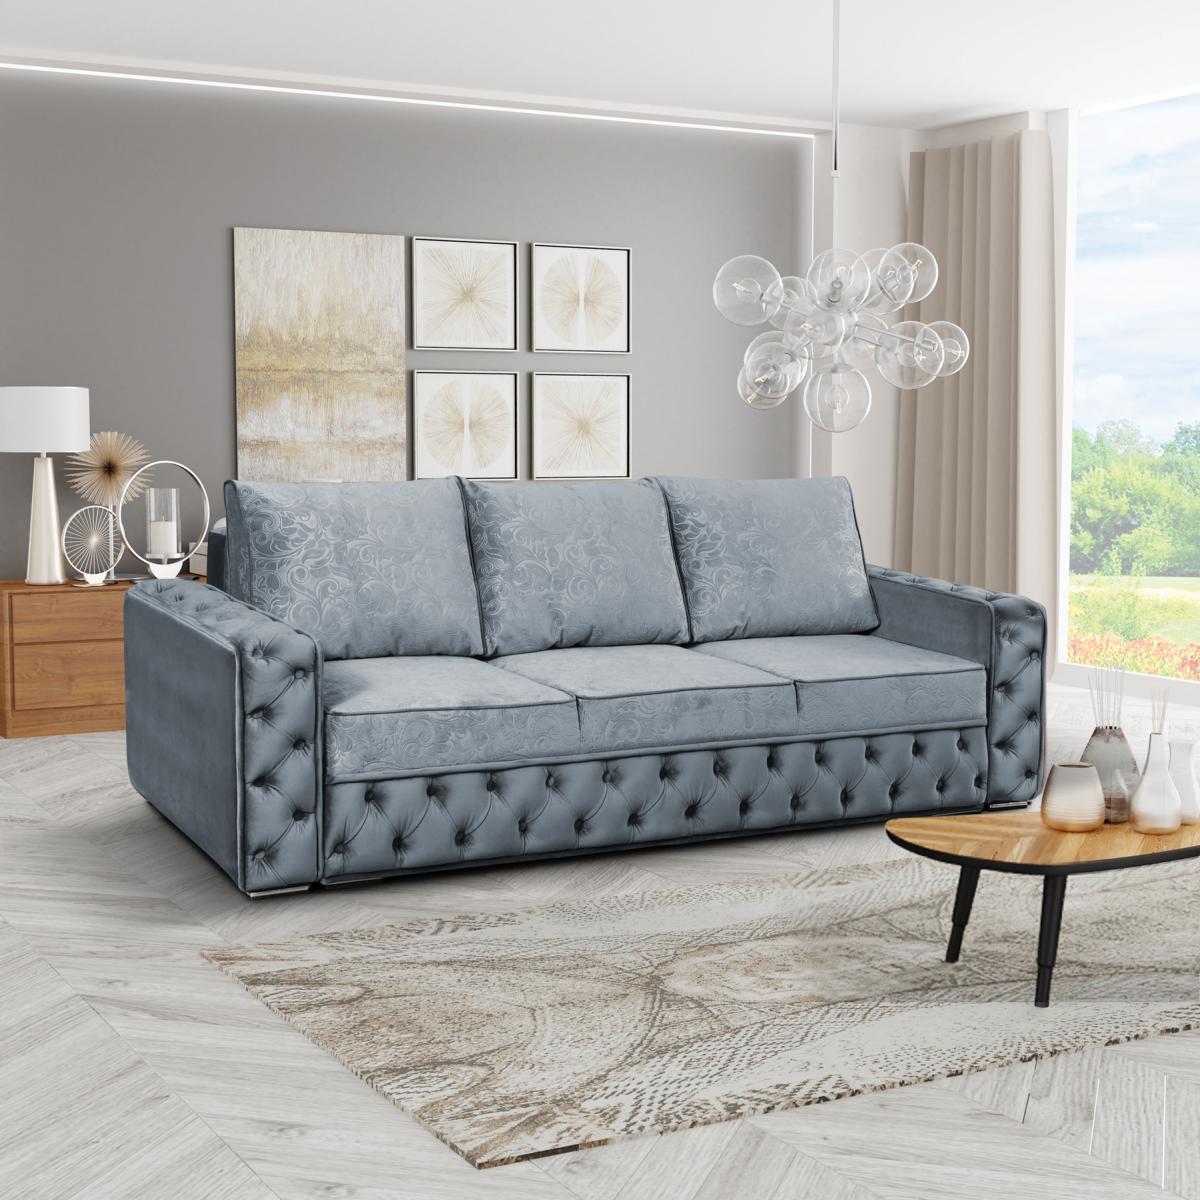 Chesterfield Design Couchen 4 Sitzplatz Textil Big Sofa Stoff Couch Schlaf Sofas